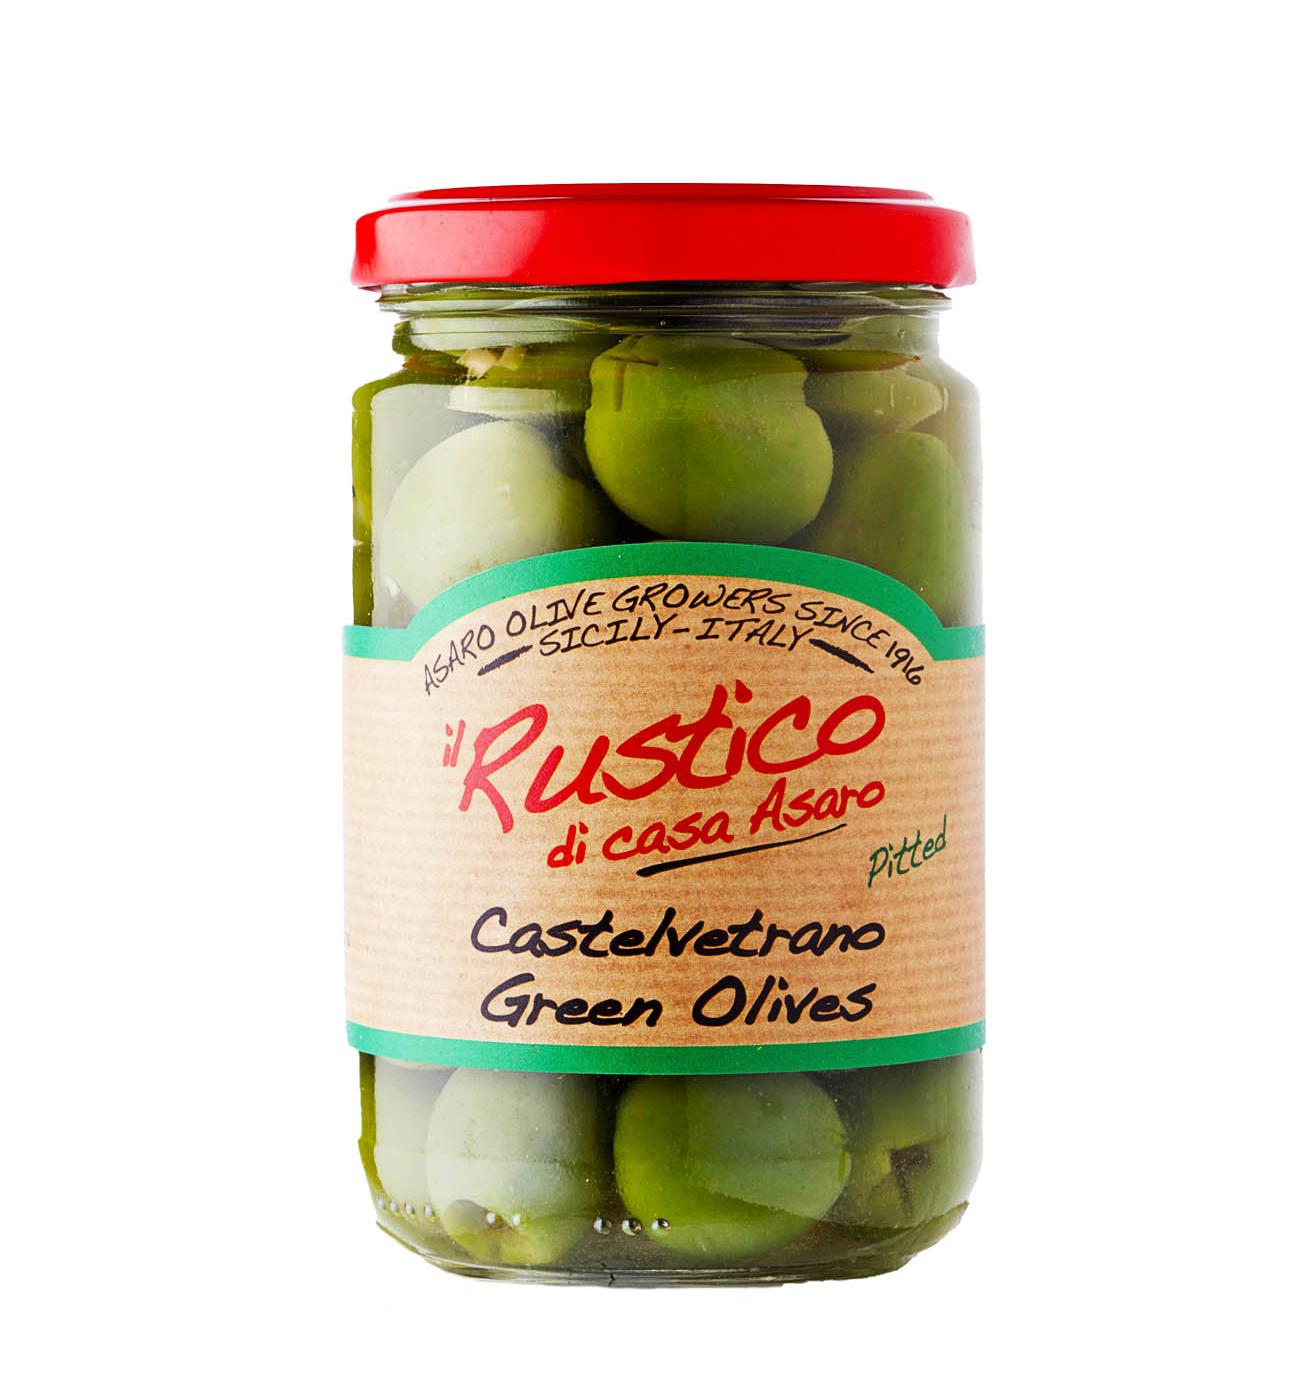 il Rustico di Casa Asaro Pitted Castelvetrano Green Olives; image 1 of 2